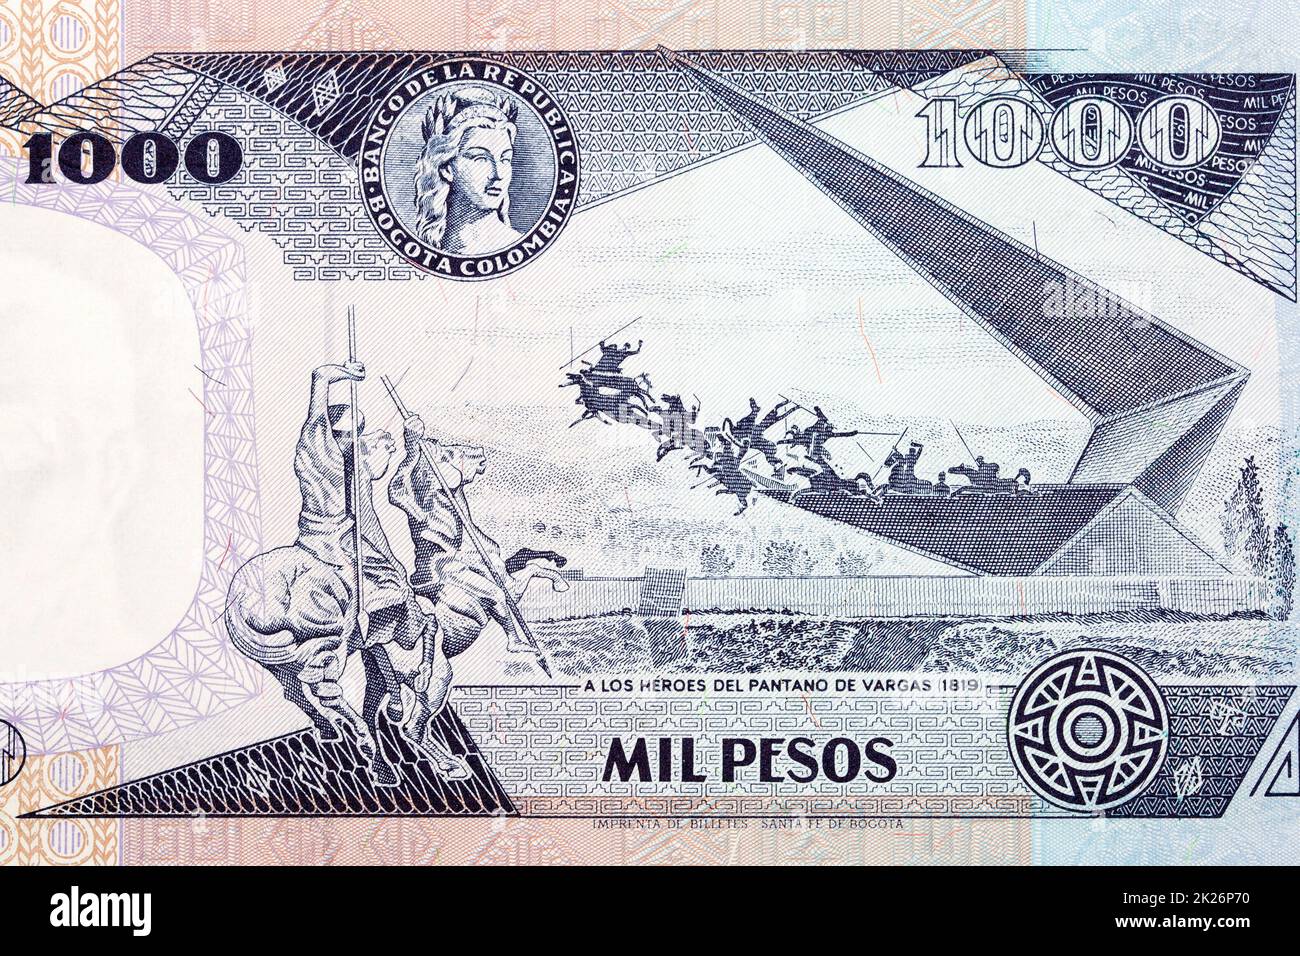 Szene zu Ehren von 1819 Kampfhelden aus dem alten kolumbianischen Geld Stockfoto